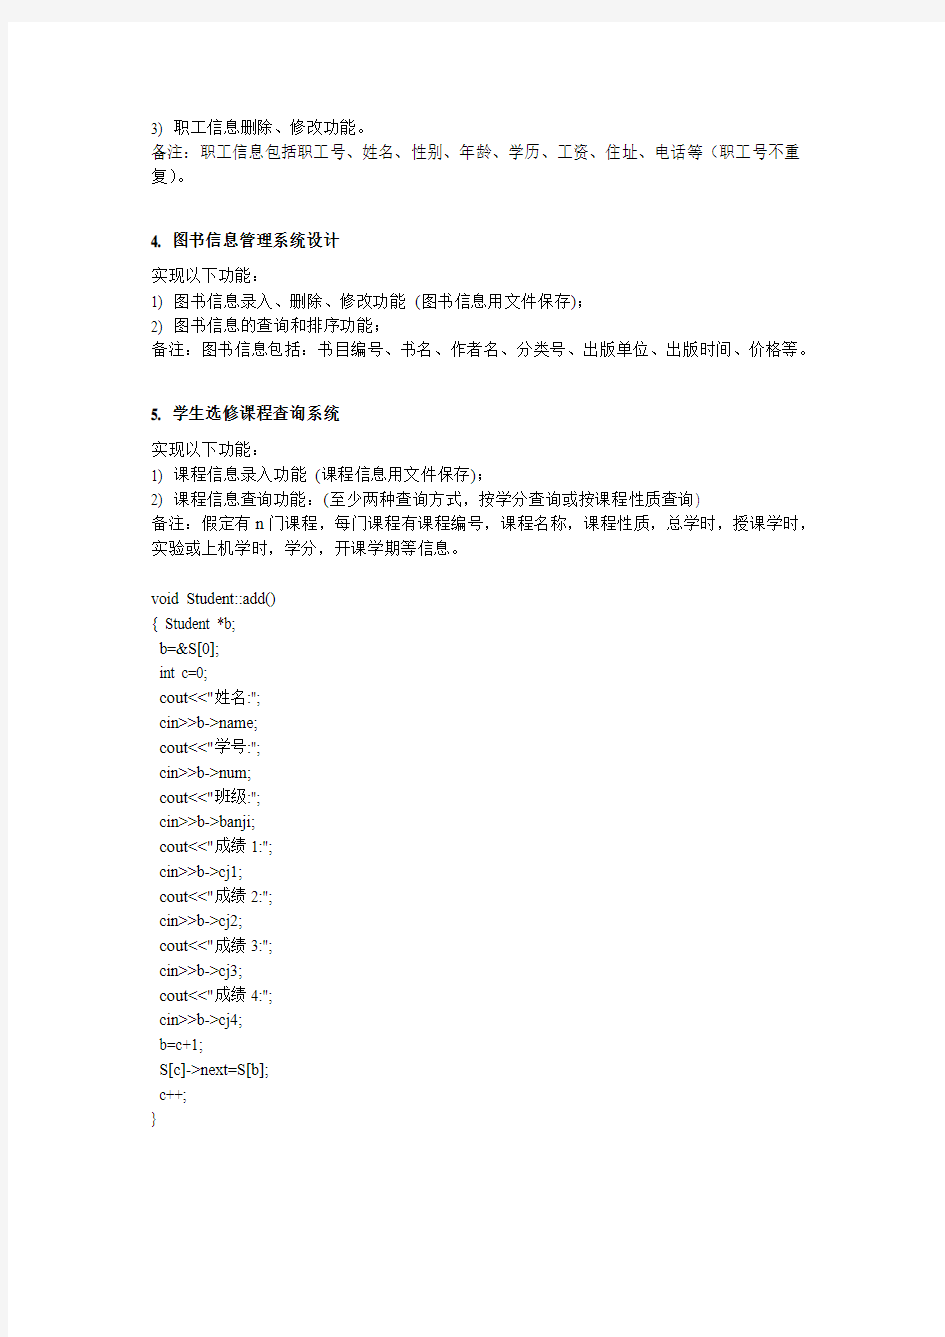 北京邮电大学C++课程设计(2015.12)